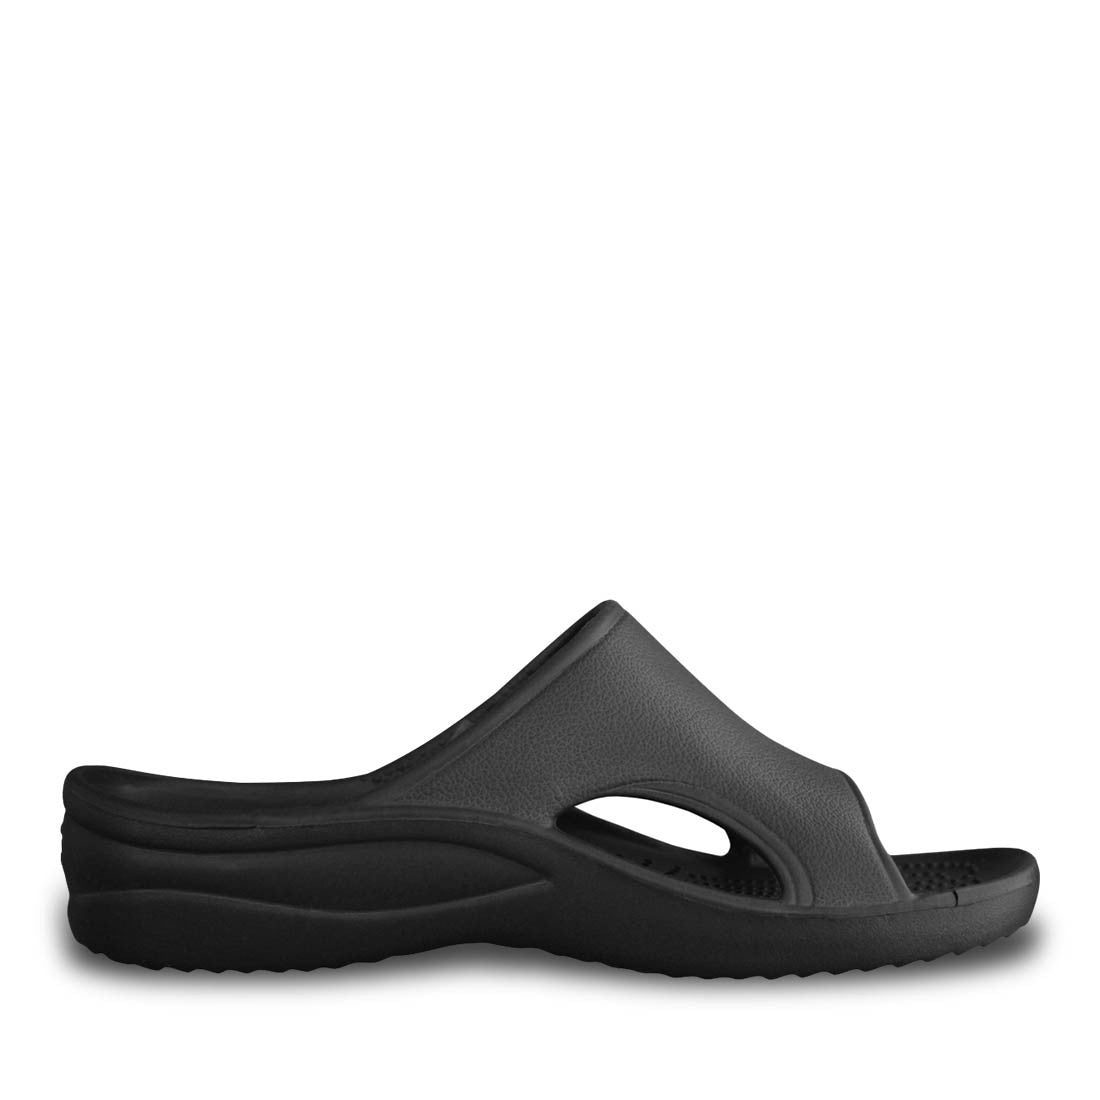 Image of Men's Slide Sandals